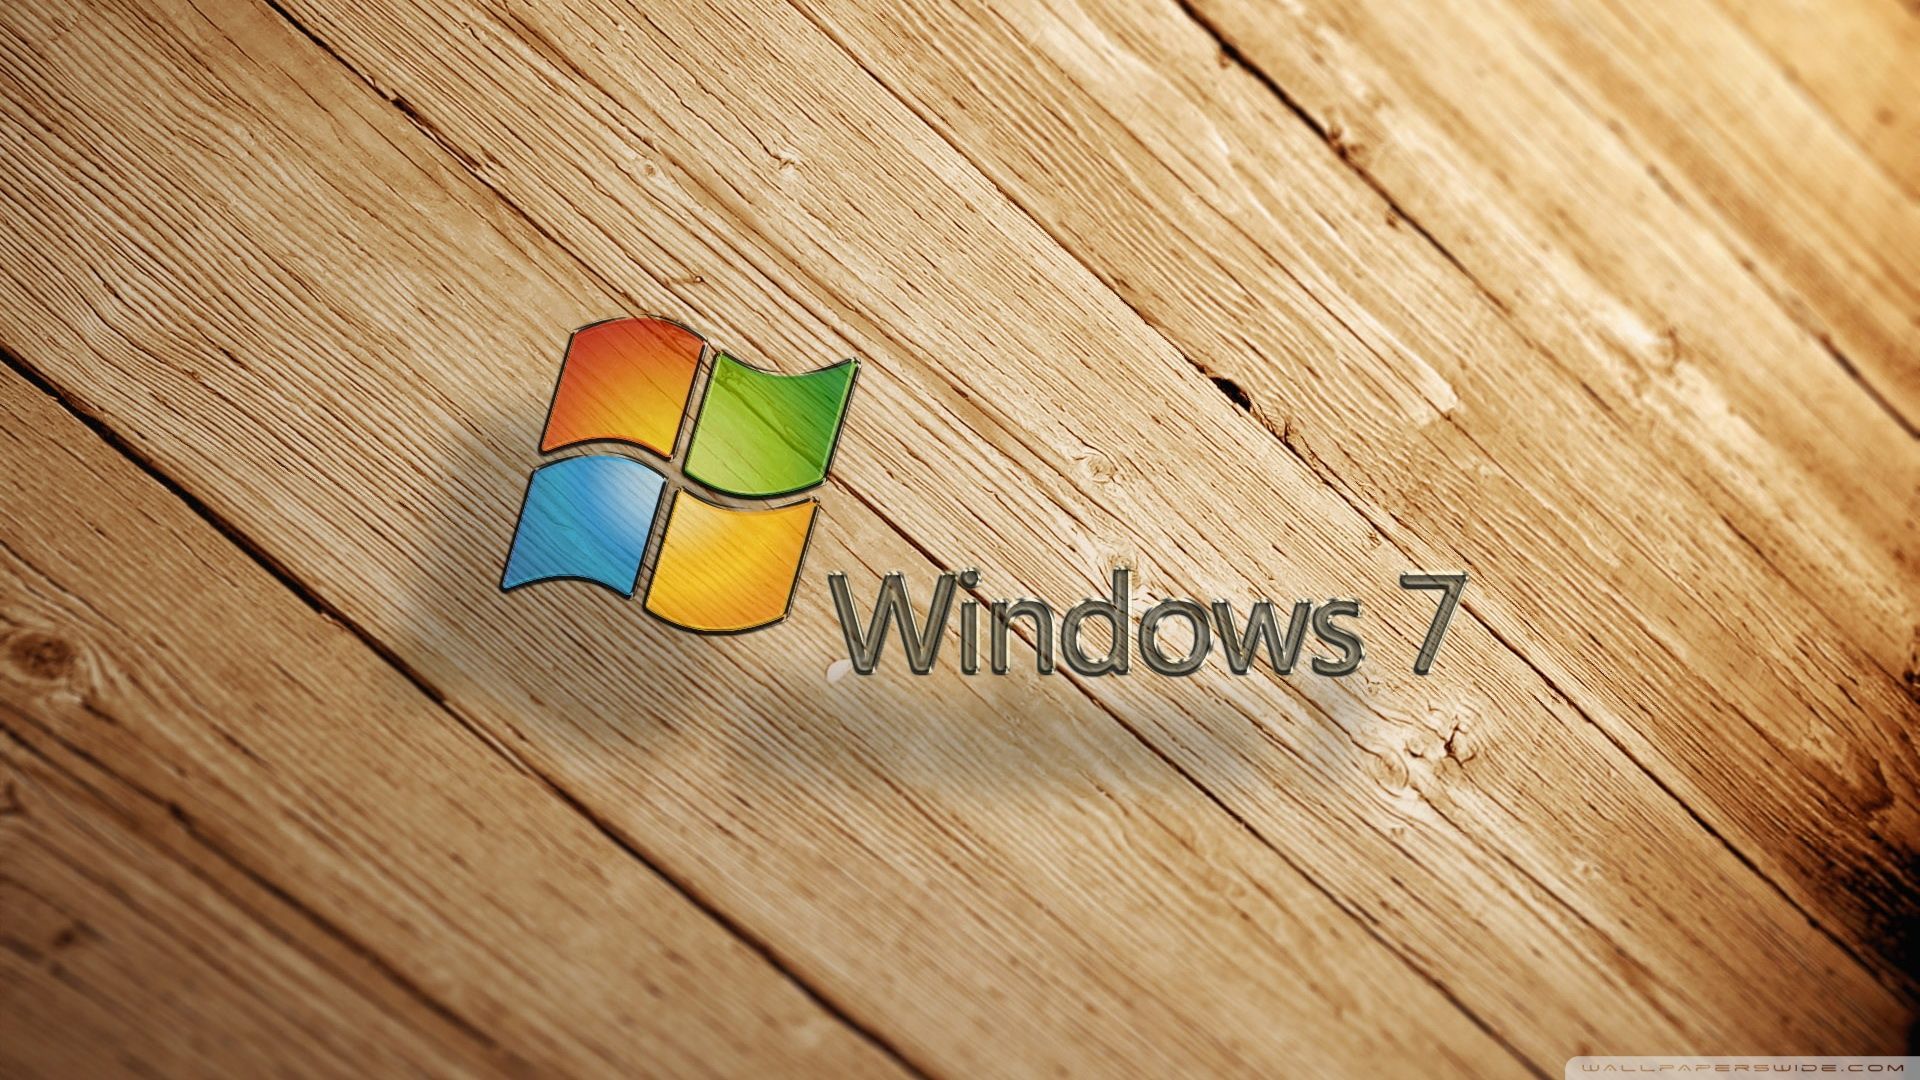 Windows 7 Wood Wallpaper Full HD [1920x1080] - Free wallpaper full ...